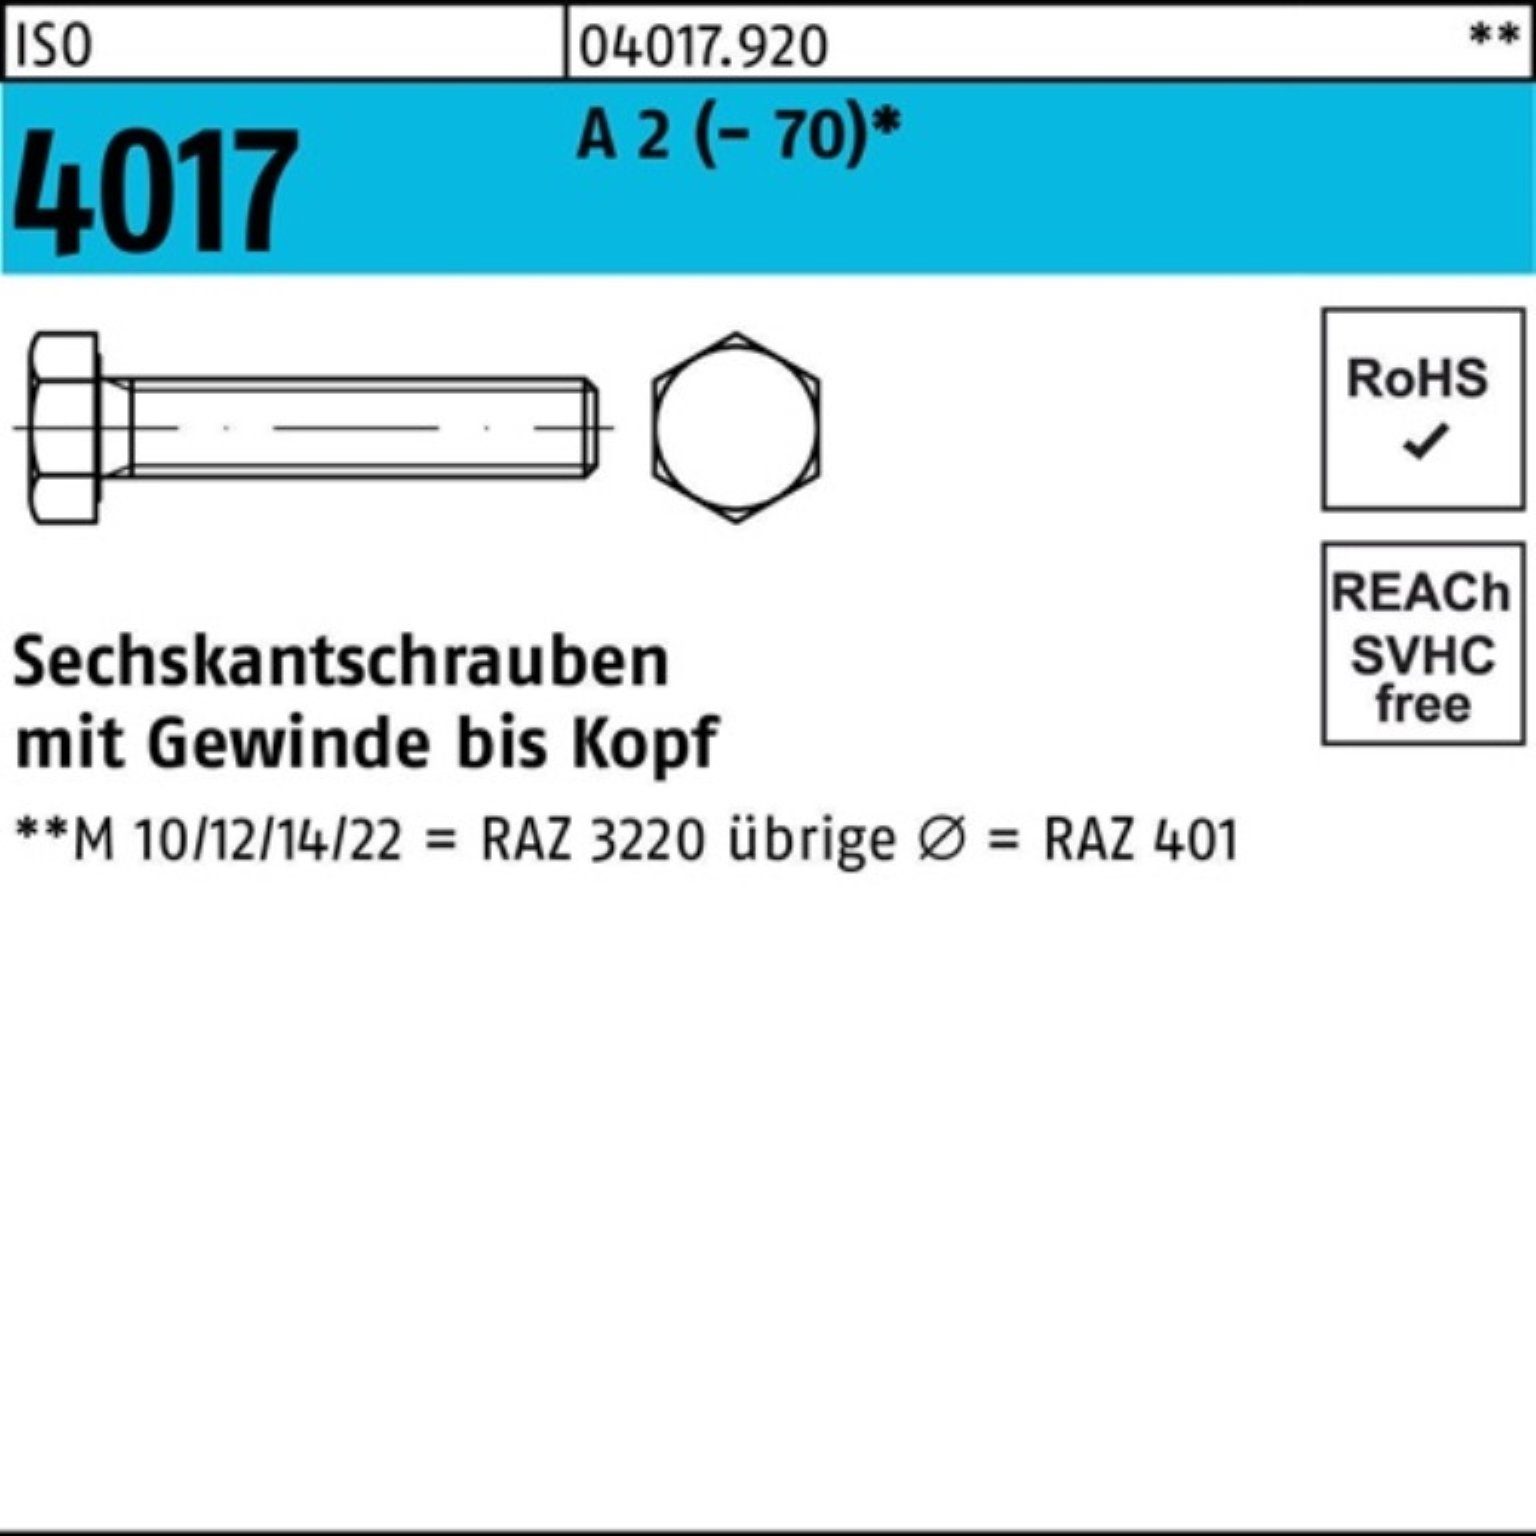 Bufab Sechskantschraube 100er Pack Sechskantschraube ISO 4017 VG M18x 35 A 2 (70) 25 Stück